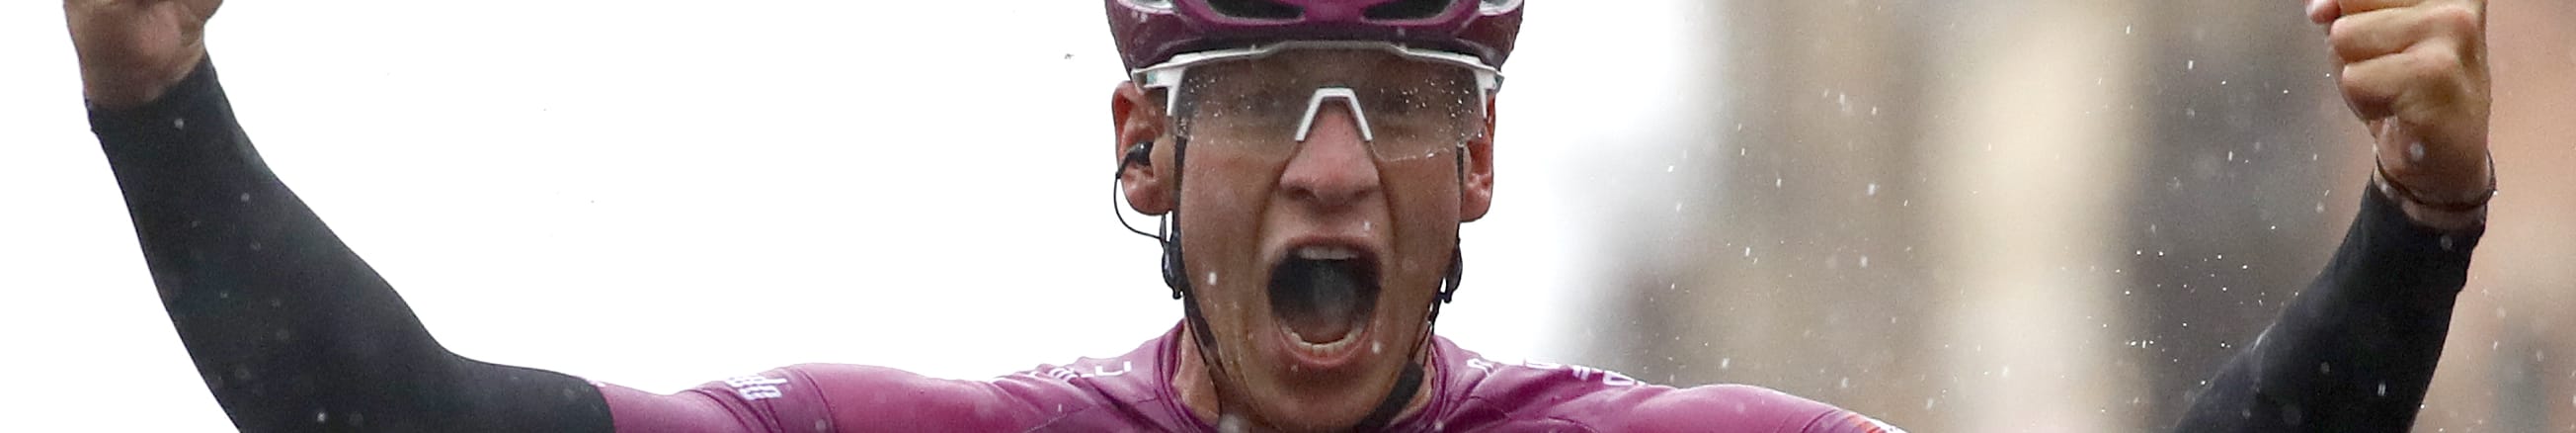 Giro d'Italia, tappa 8: Ackermann va per il tris, chance anche per De Gendt